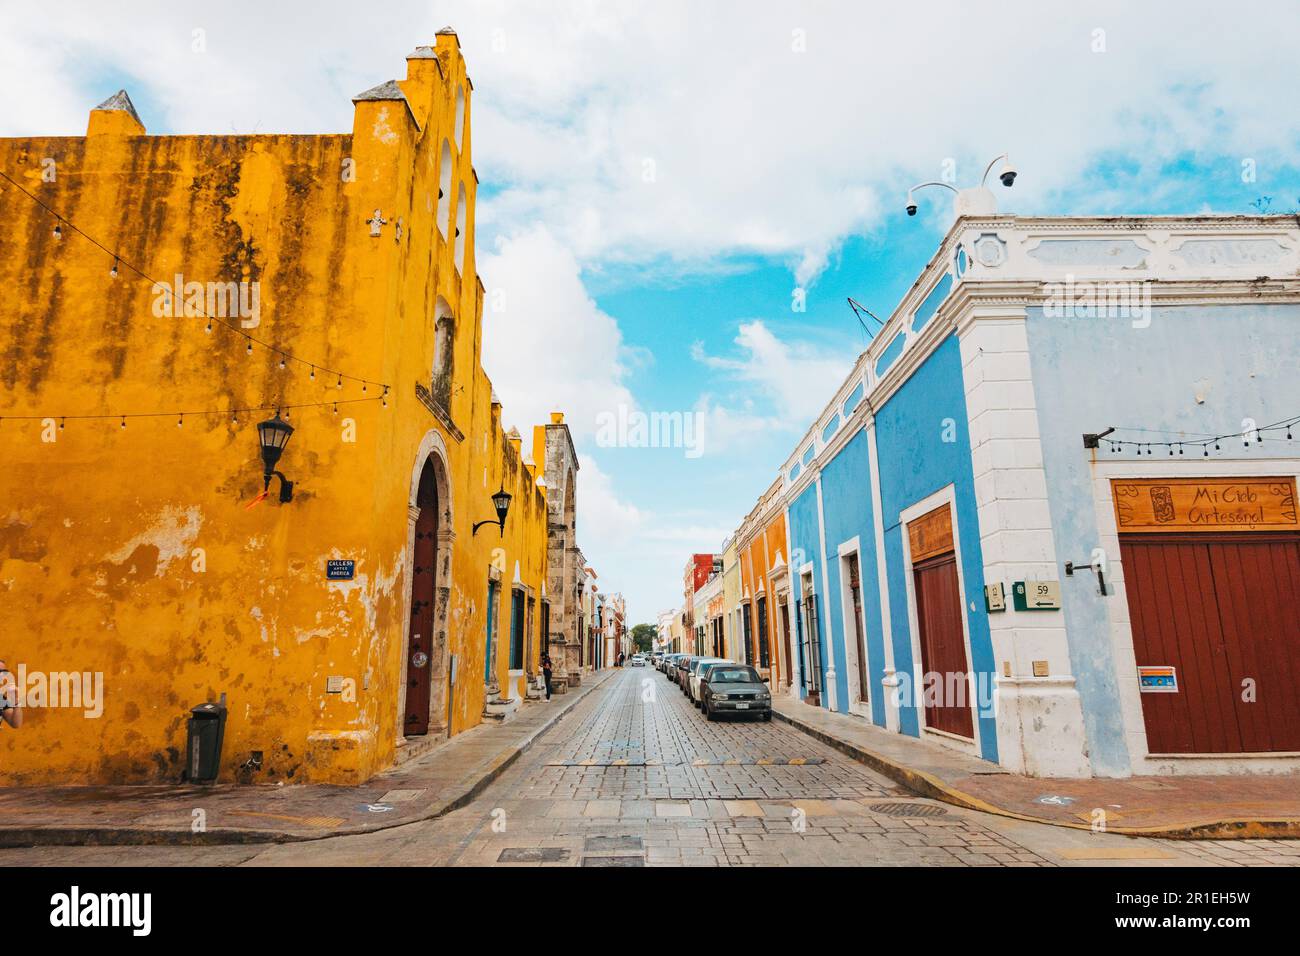 Bâtiments coloniaux espagnols peints dans diverses couleurs vives sur Calle 59 dans le centre historique de la ville de Campeche, au Mexique Banque D'Images